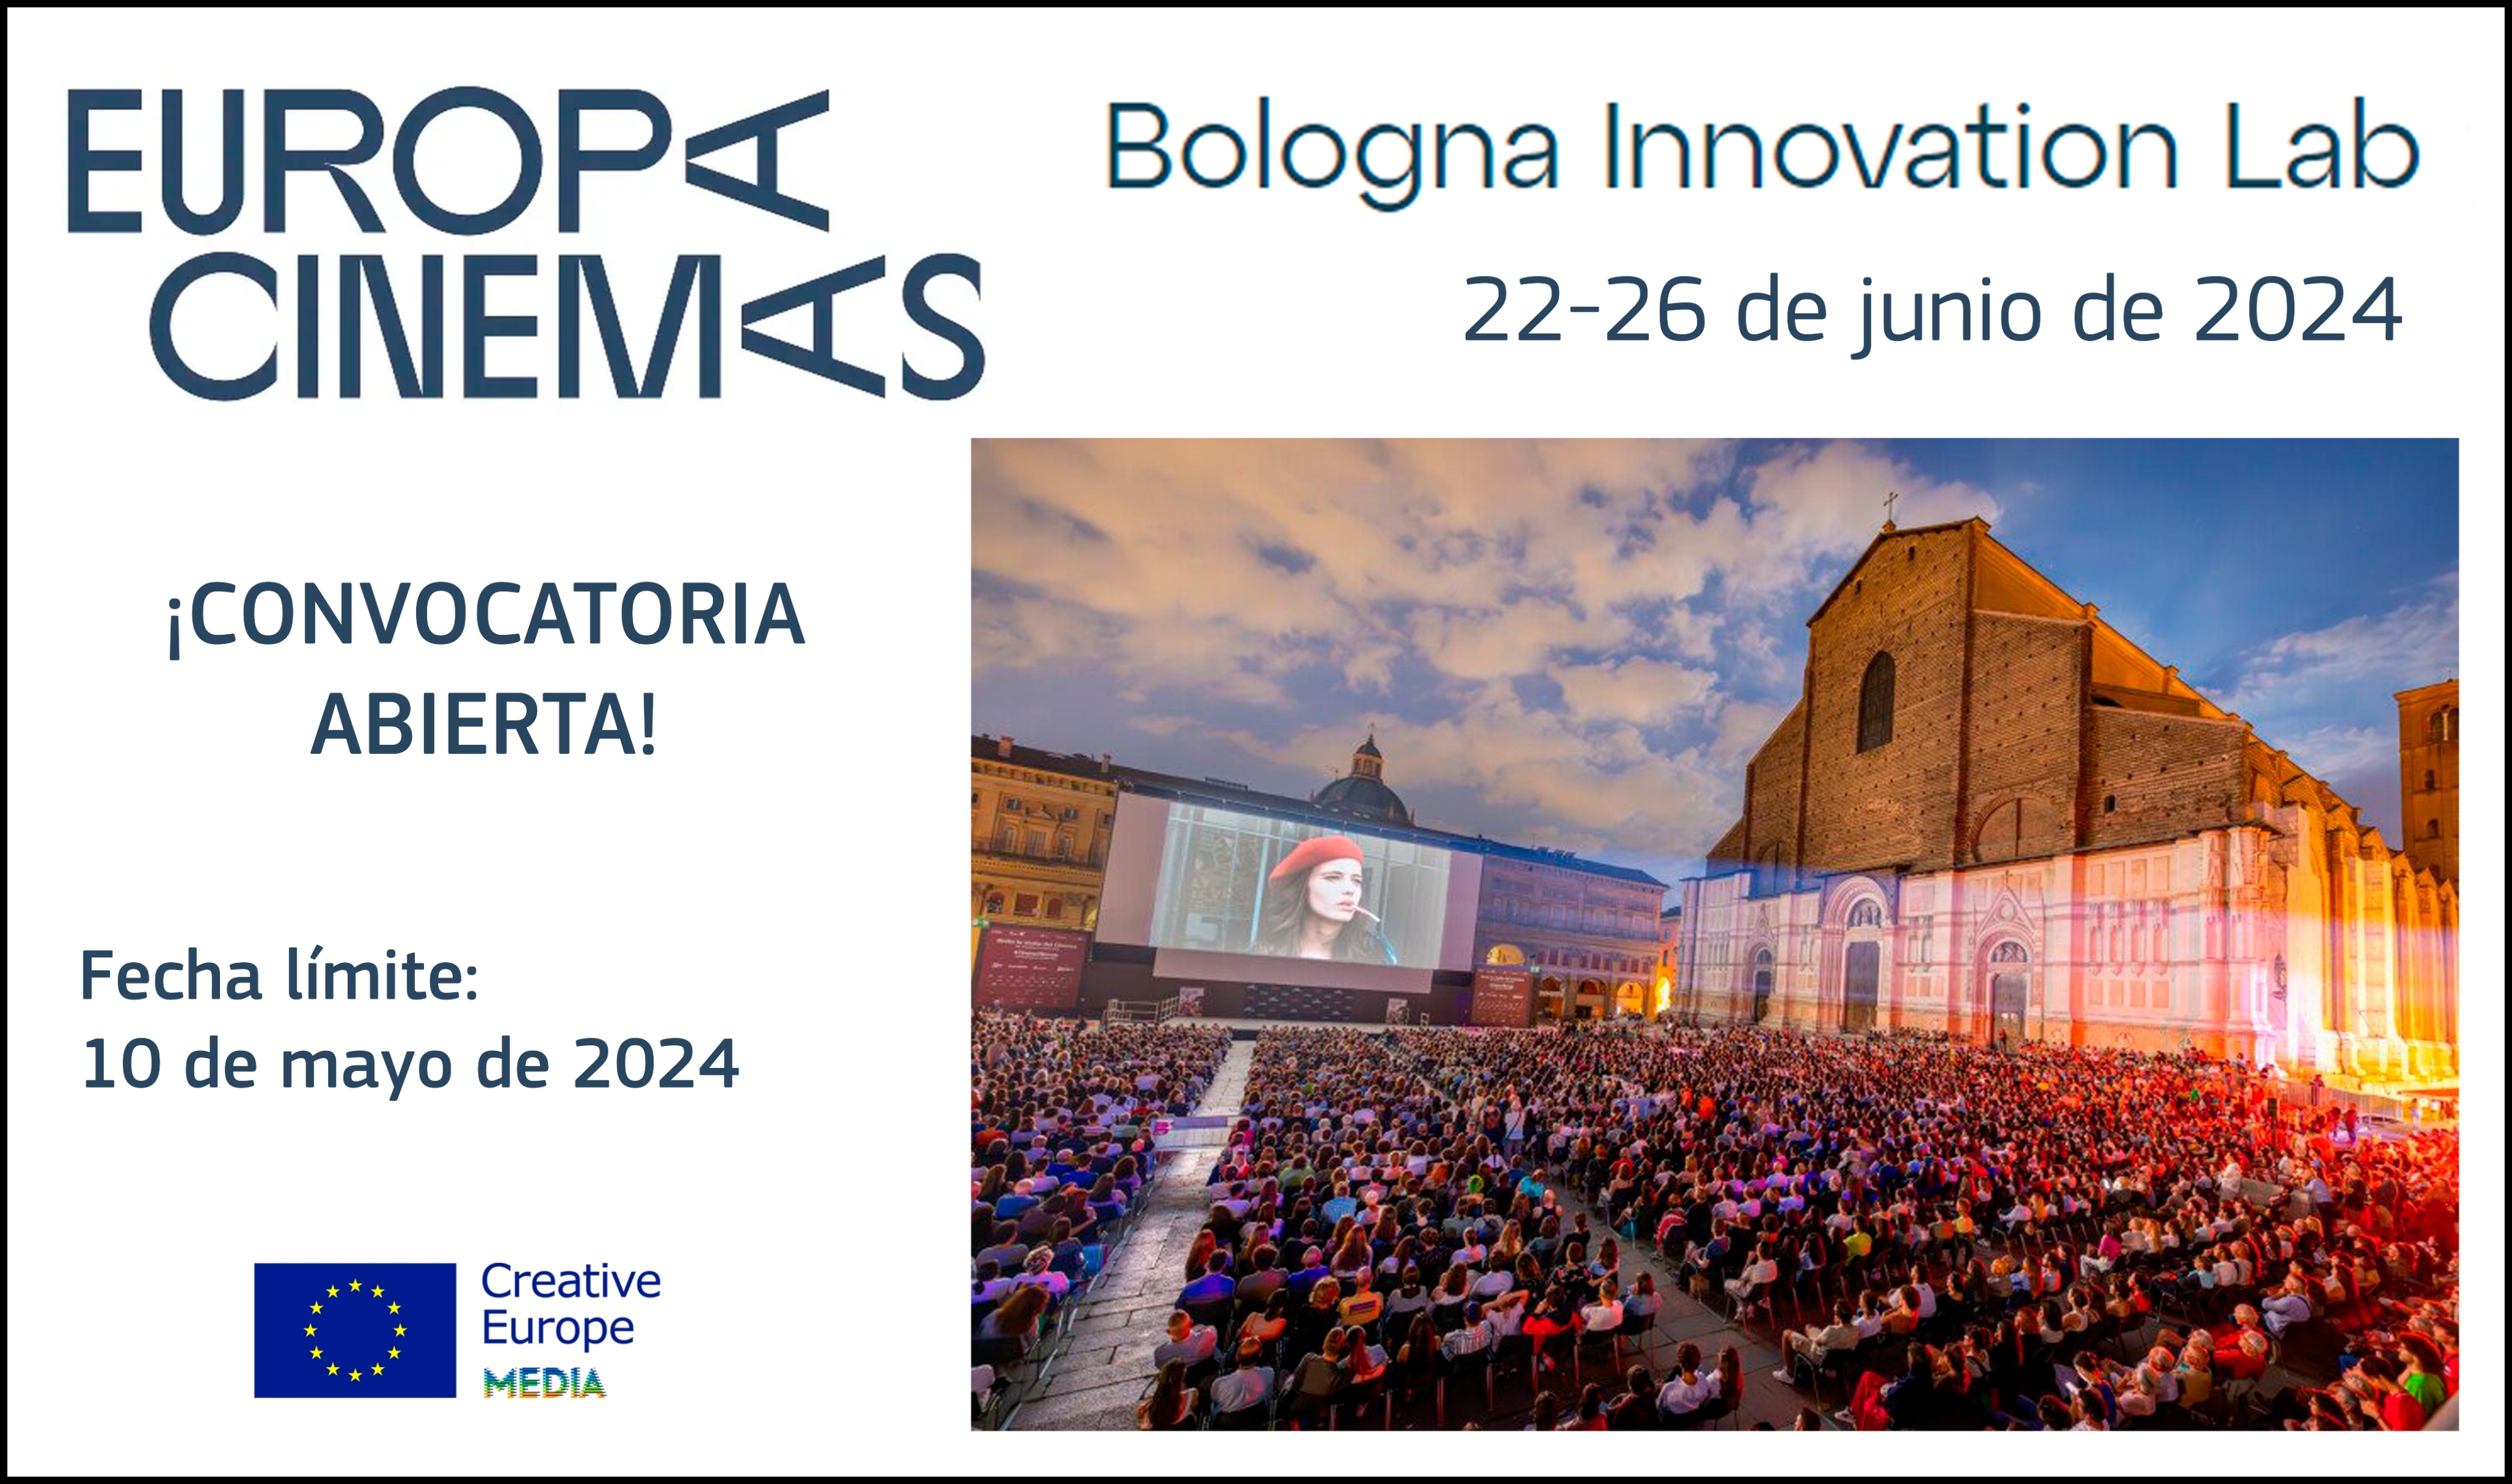 EUROPA CINEMAS: Abierta la convocatoria del Bologna Innovation Lab 2024 para exhibidores